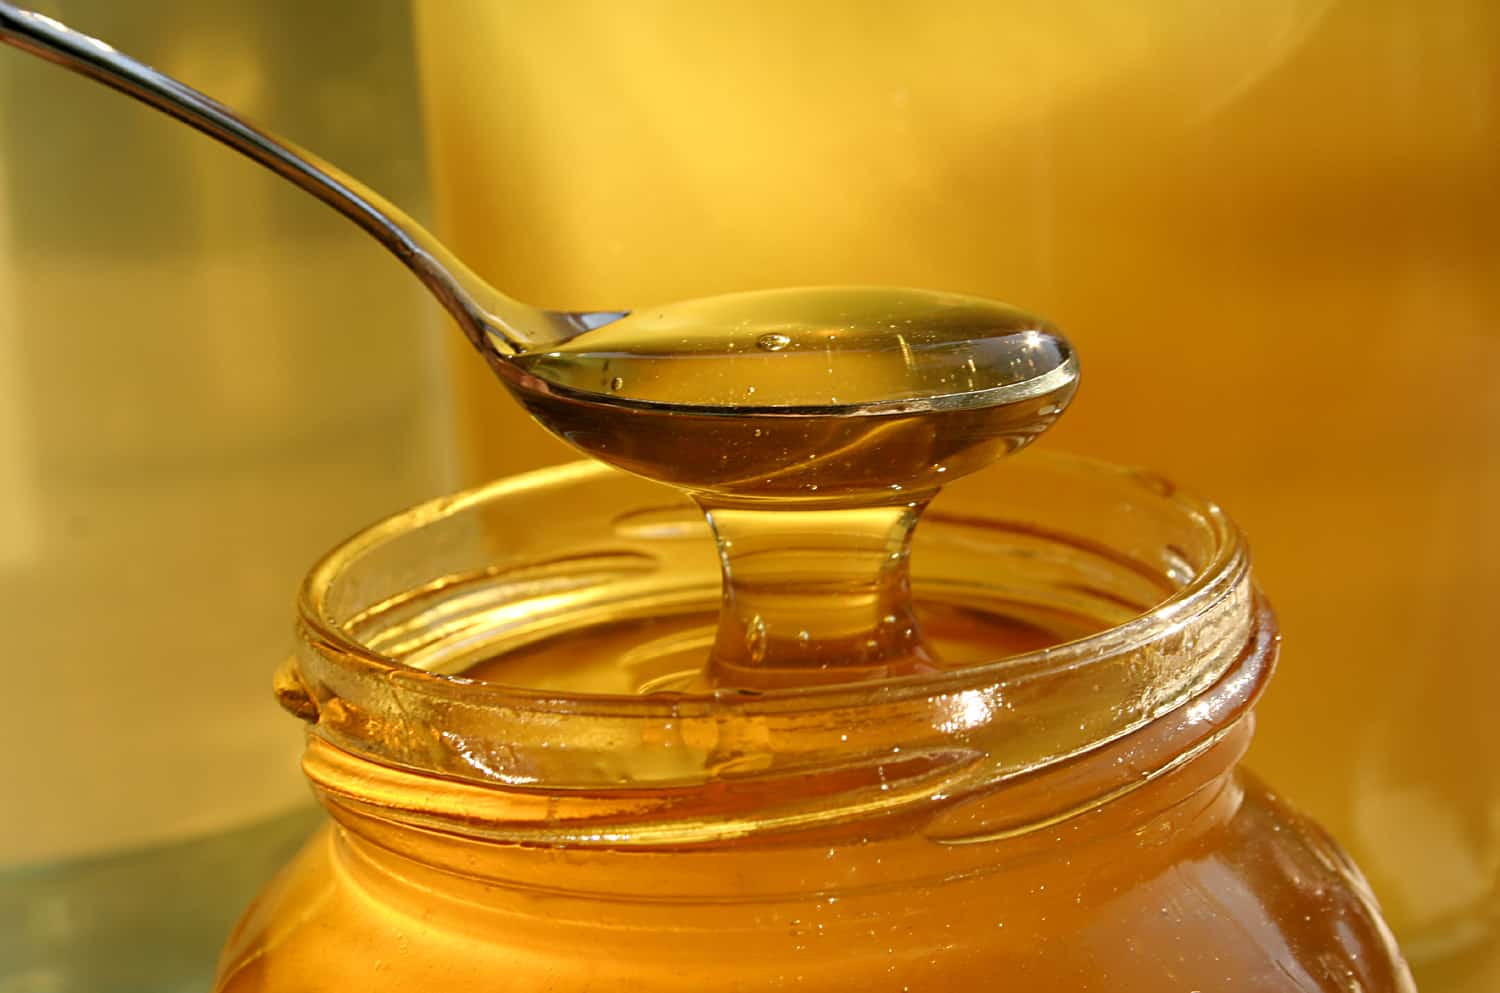 العسل الجبلي في الجزائر؛ الوان ذهبي اسود ضد الالتهابات يزيل الاملاح الضارة